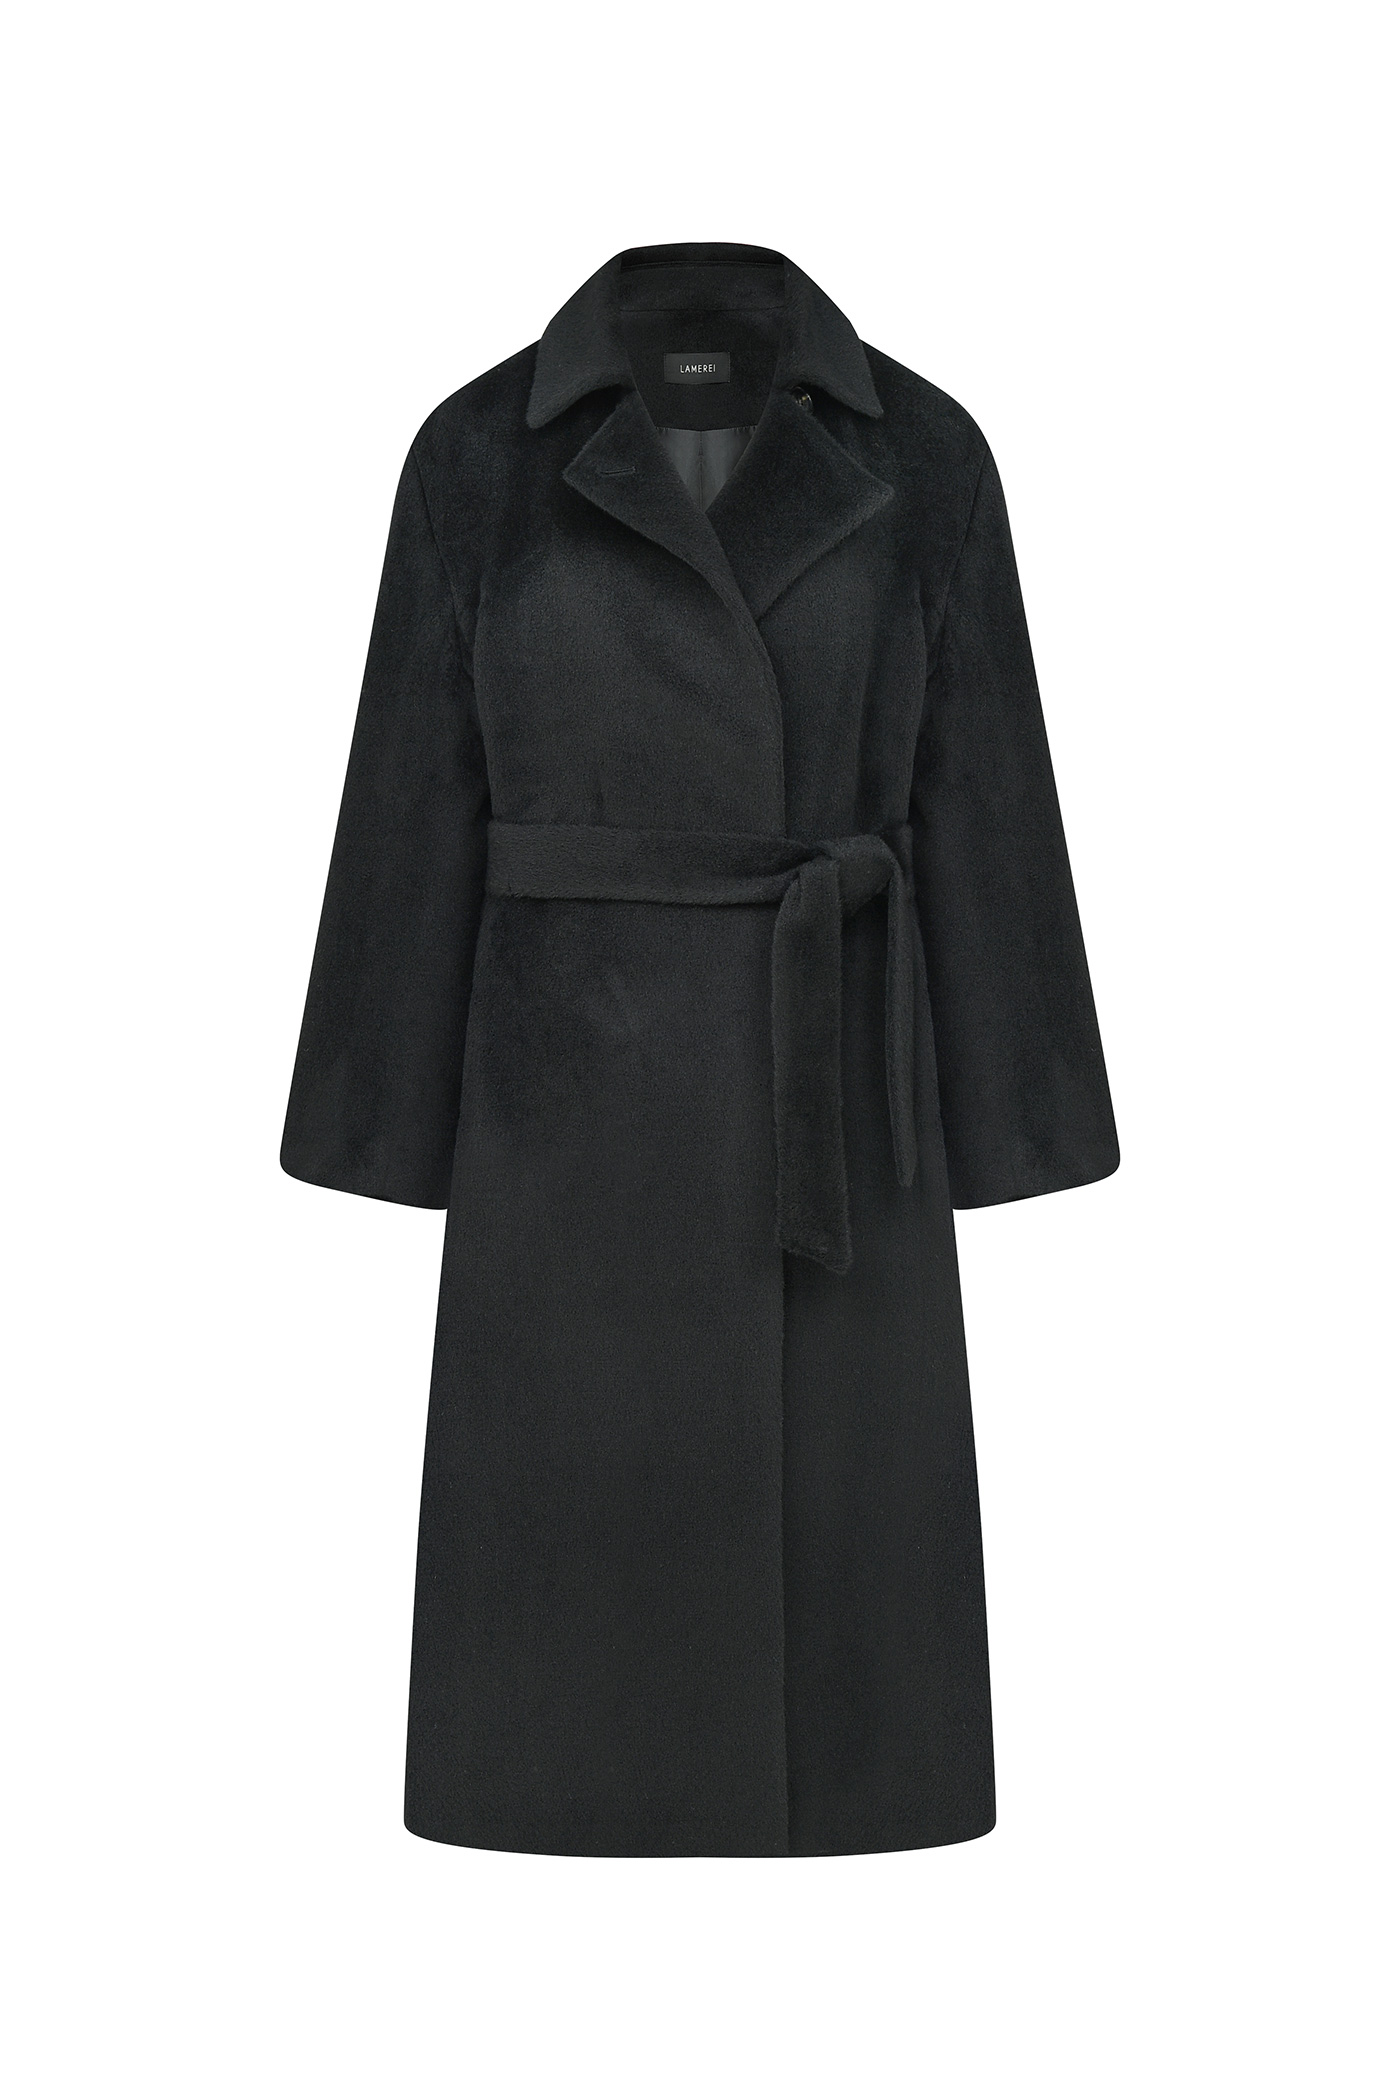 Suri Alpaca Coat[LMBBWICT203]-Black